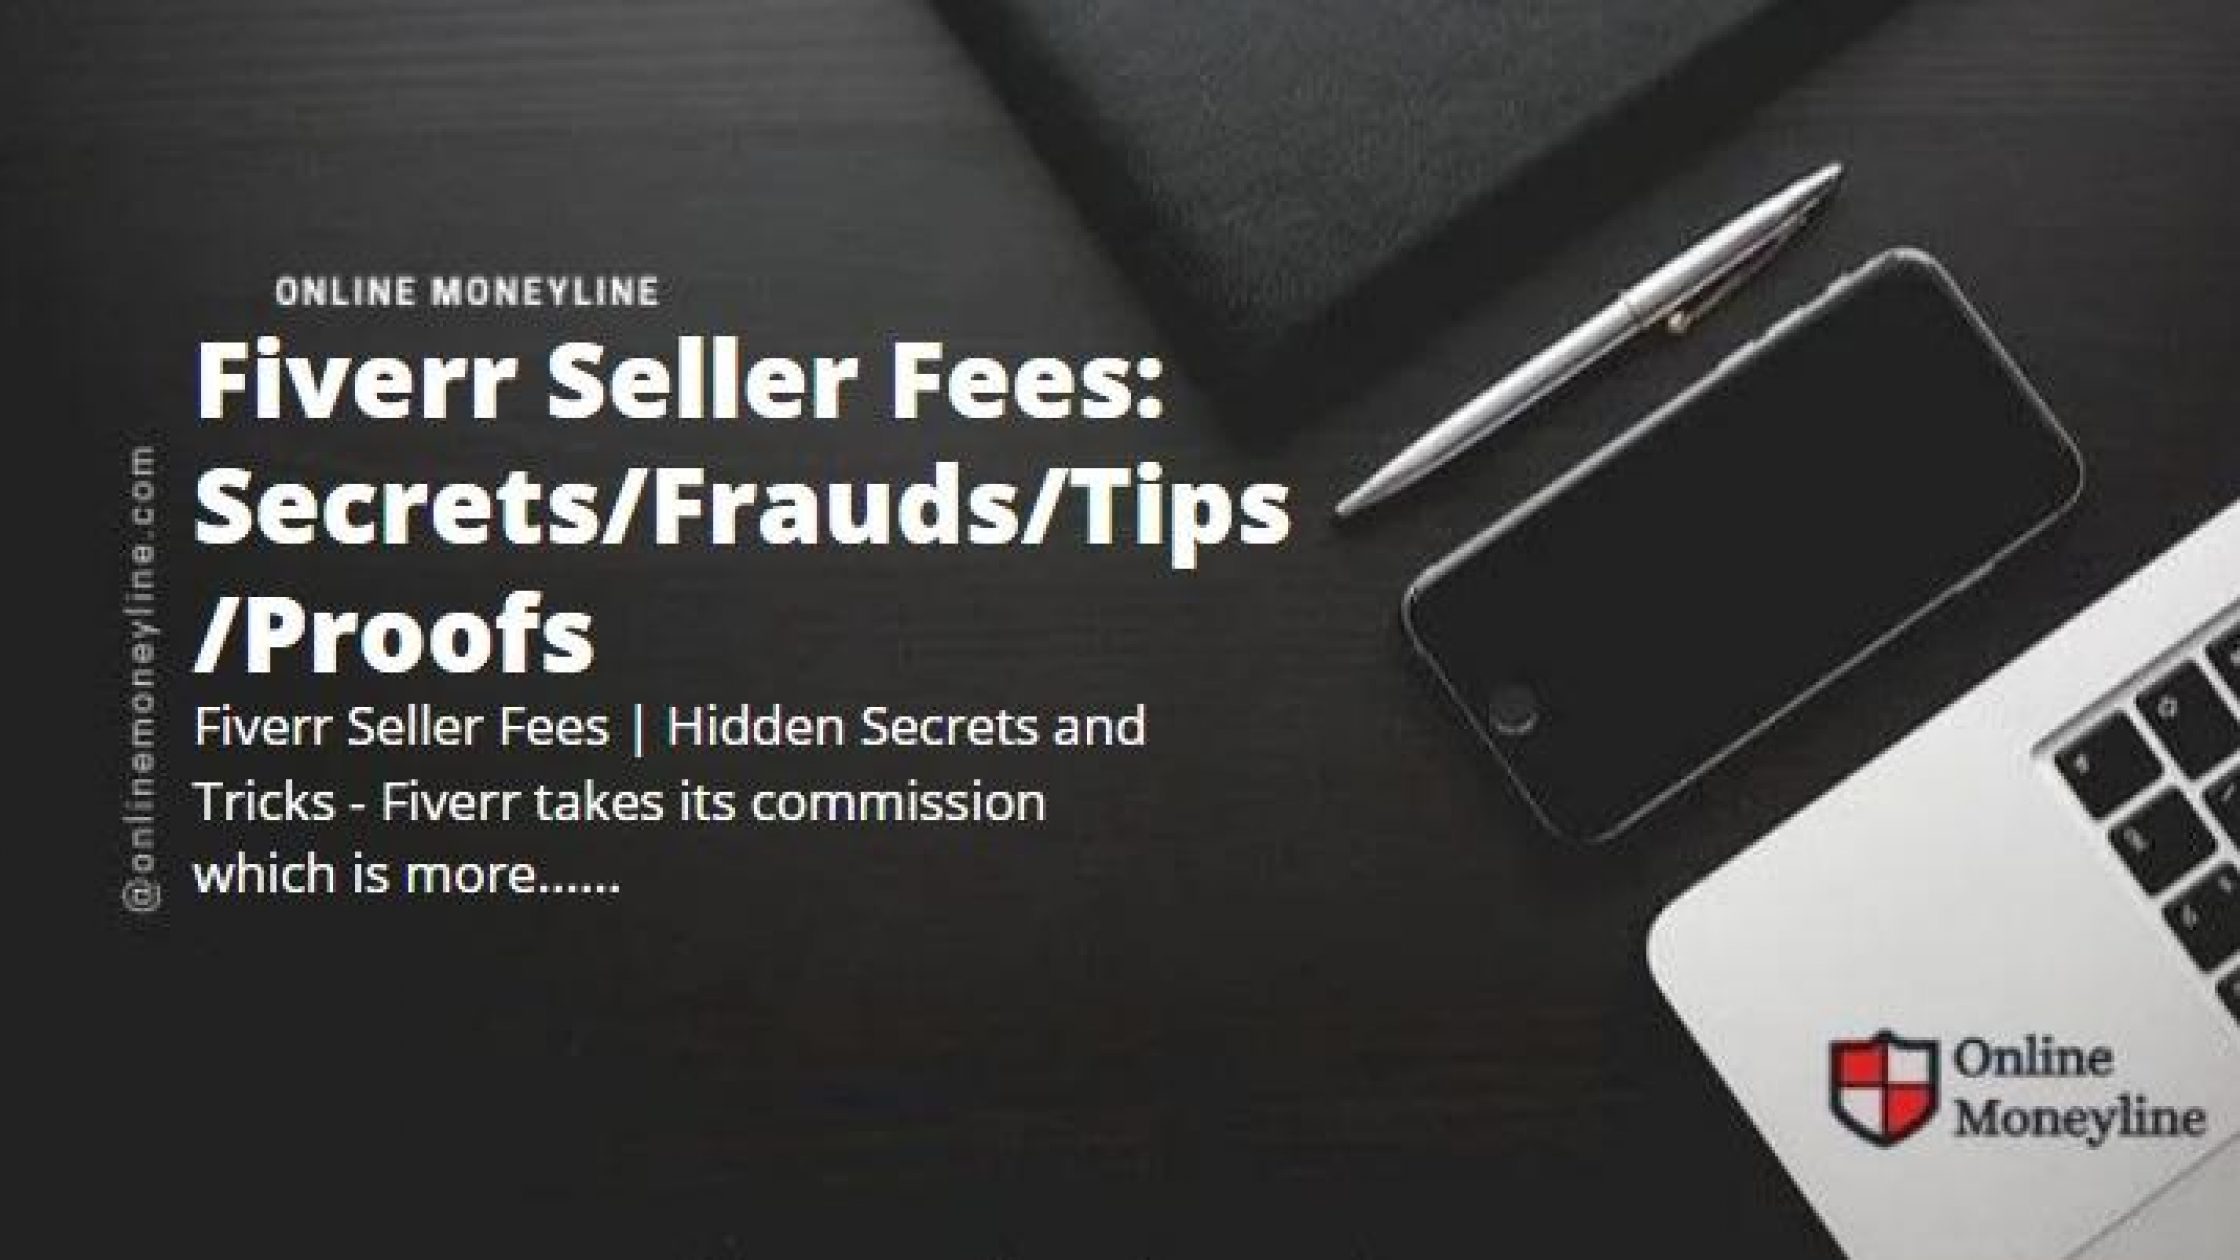 Fiverr Seller Fees: Secrets/Frauds/Tips/Proofs